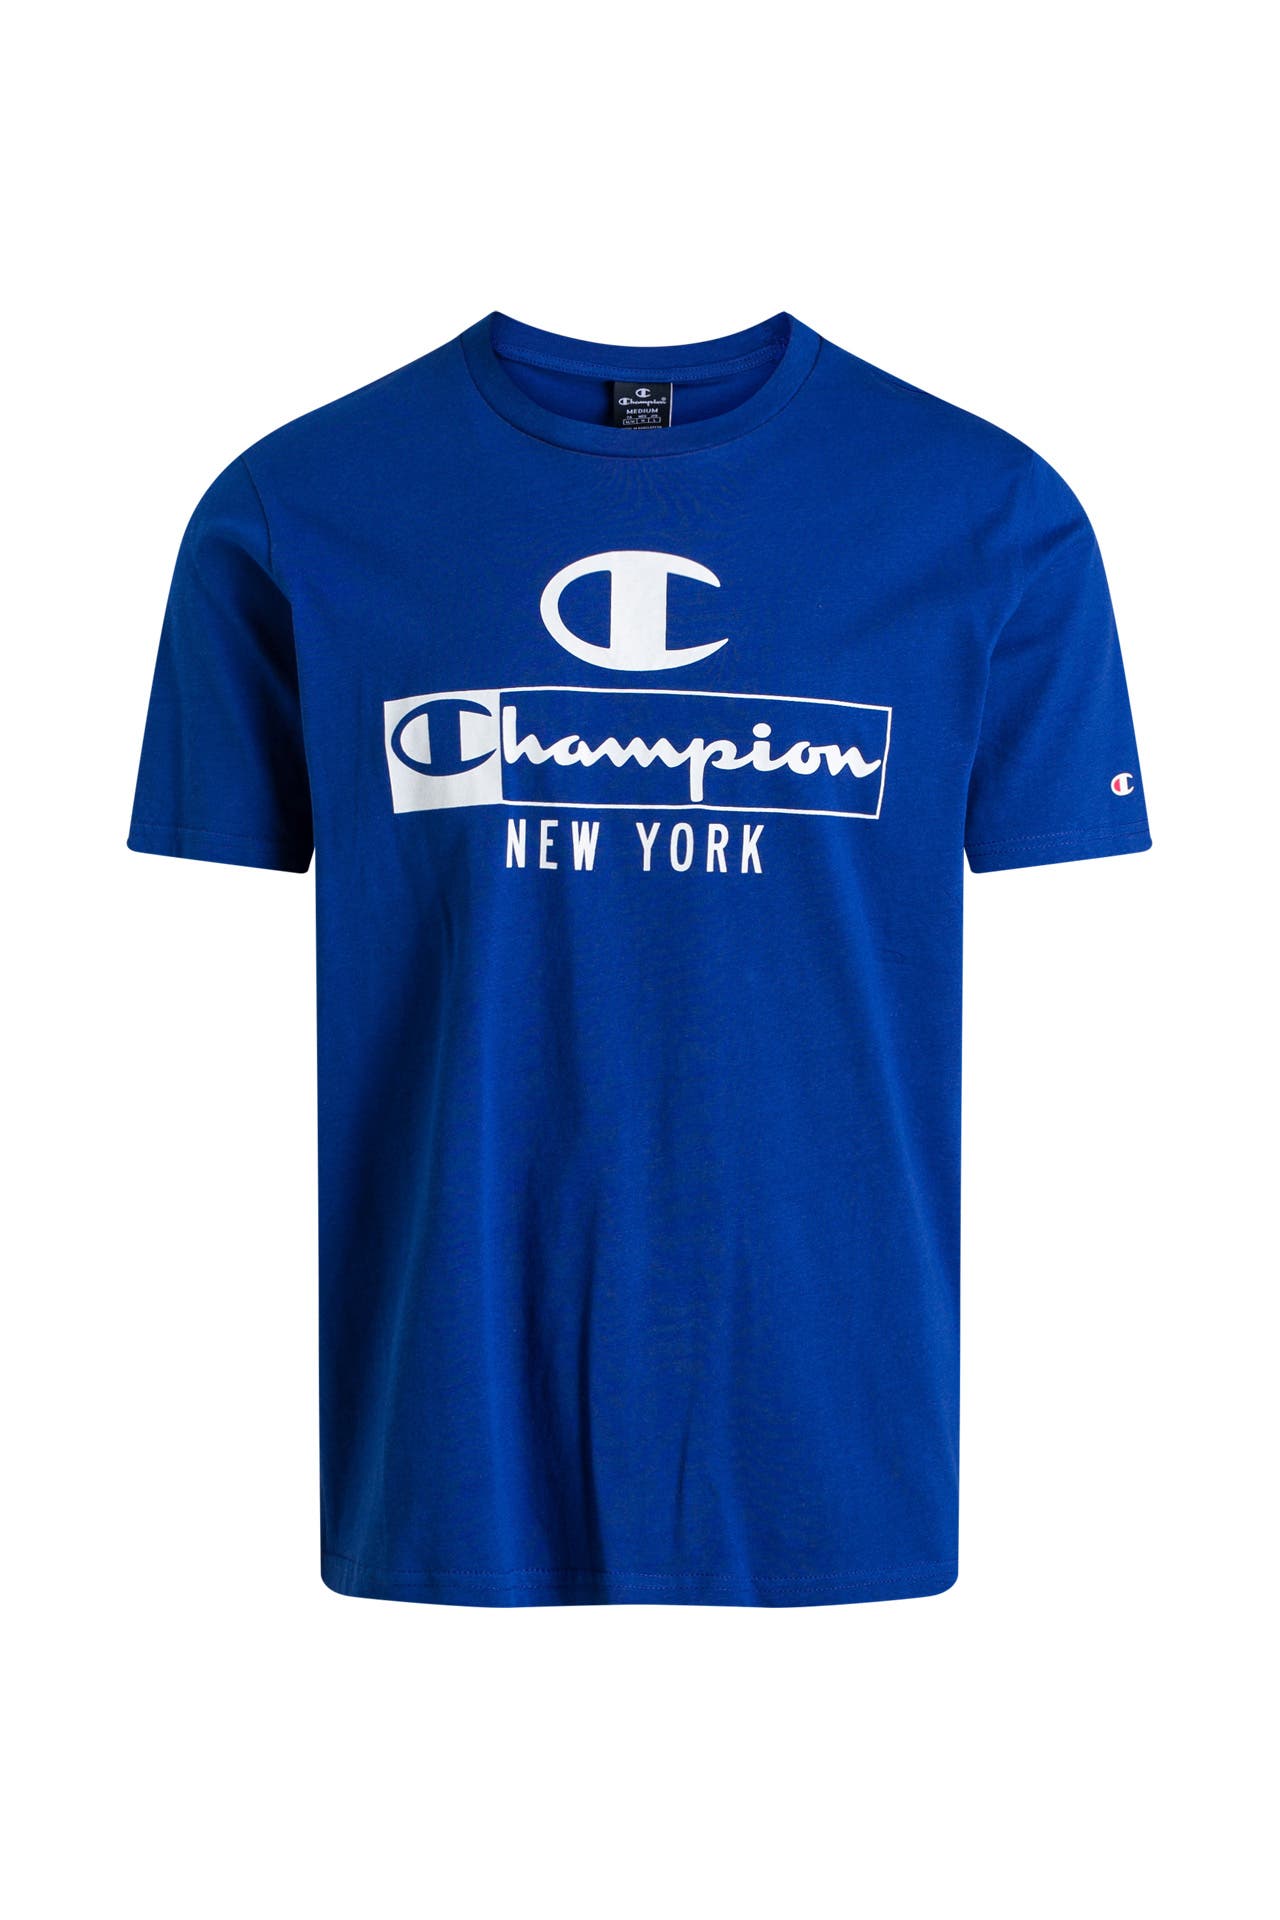 T-Shirt blau - CHAMPION günstig | Outletcity online kaufen »